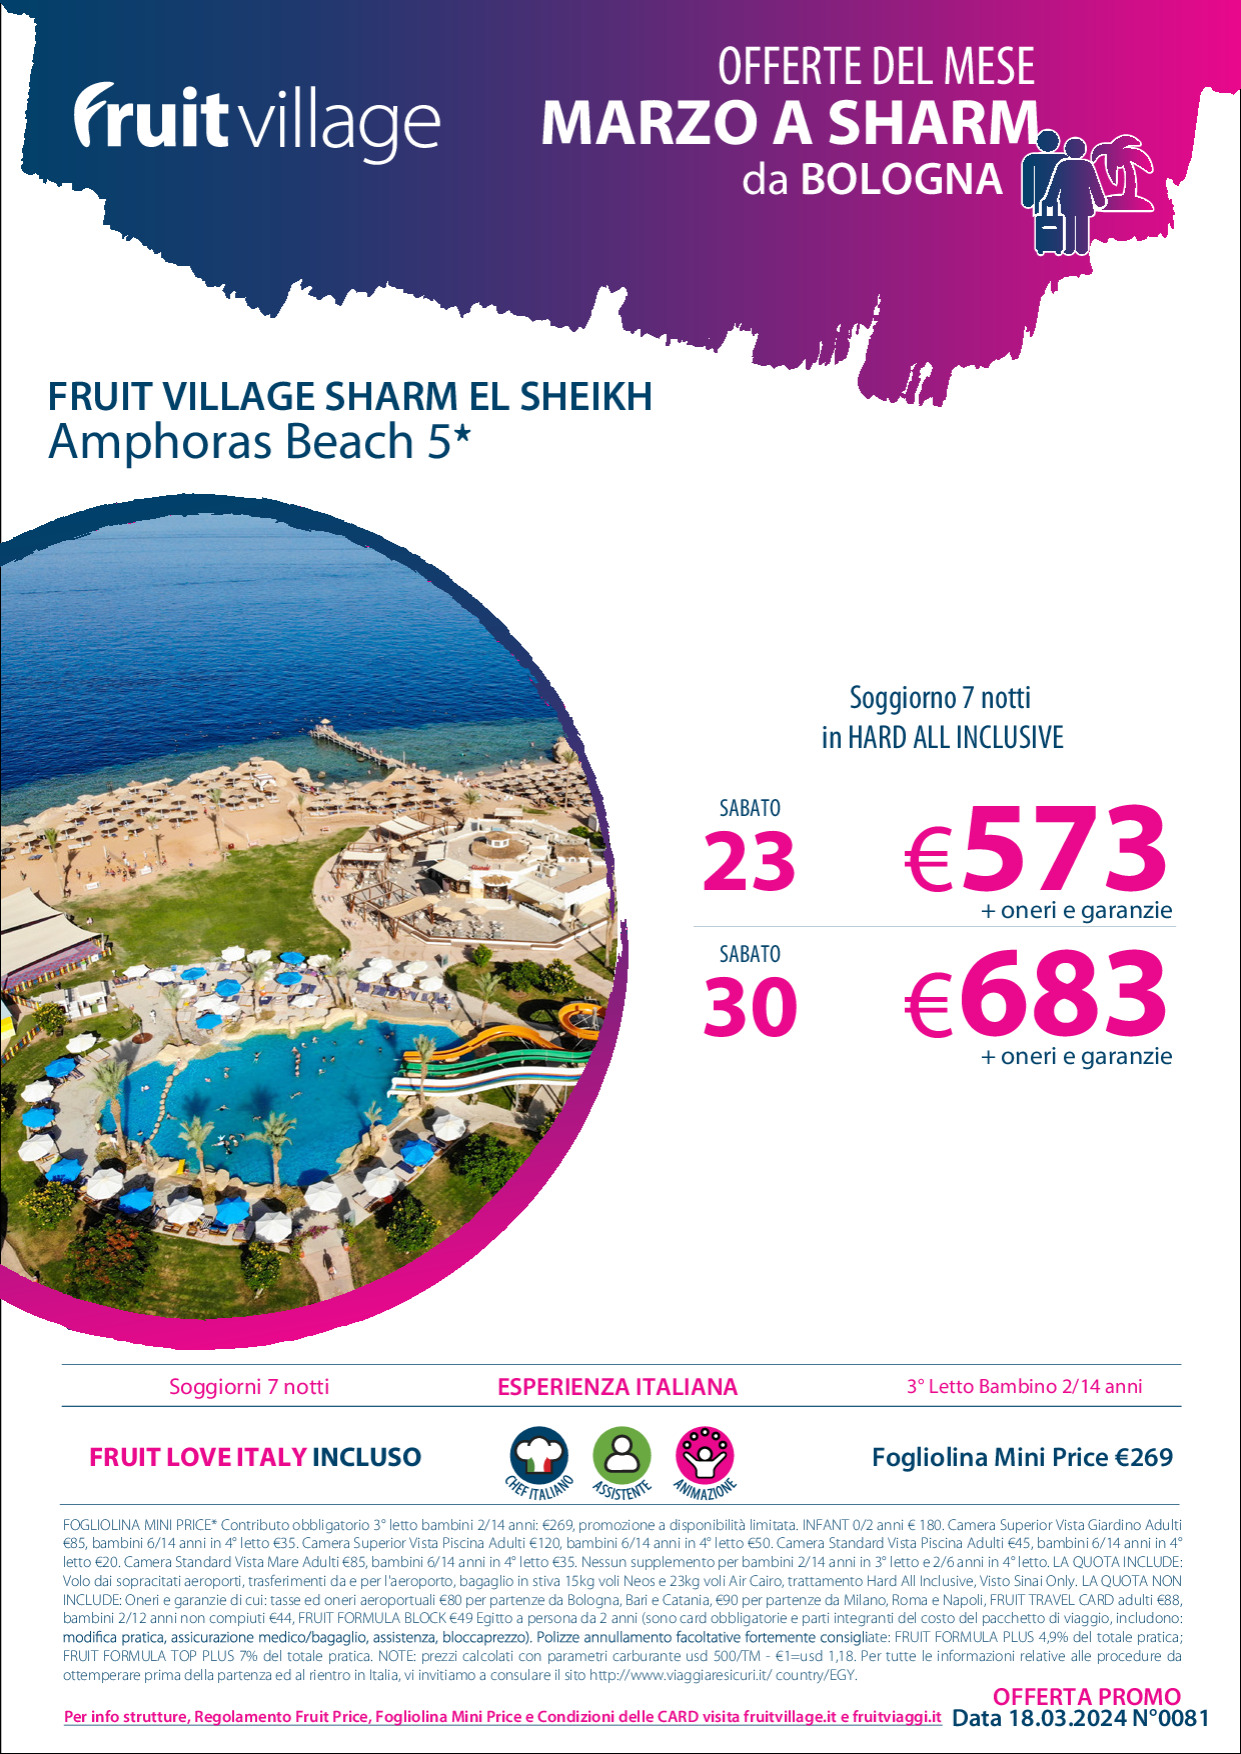 FRUIT VILLAGE Sharm El Sheikh Amphoras Beach - da Bologna a Marzo